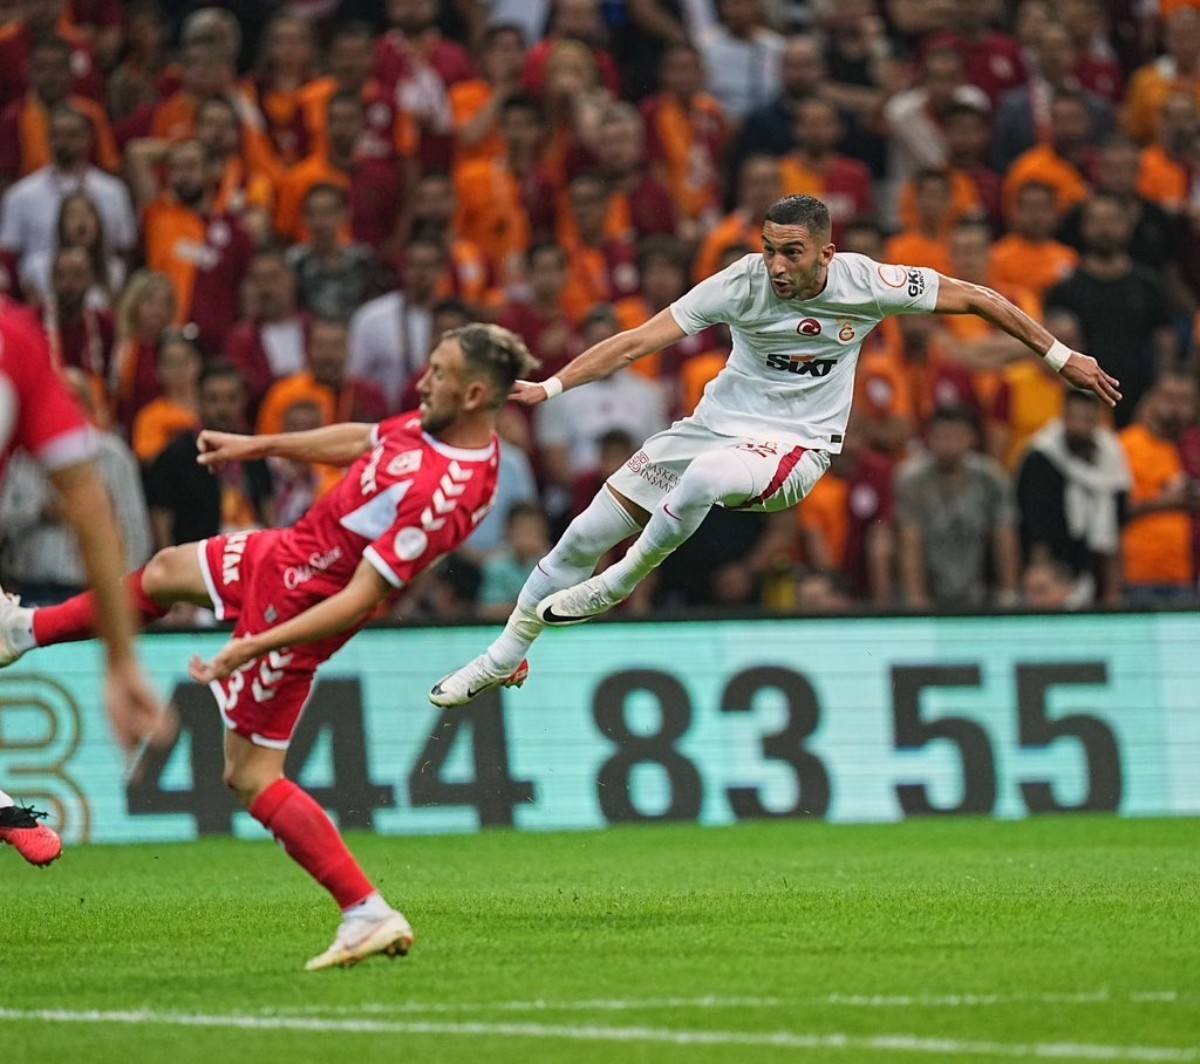 Samsunspor, Galatasaray deplasmanından eli boş ayrıldı